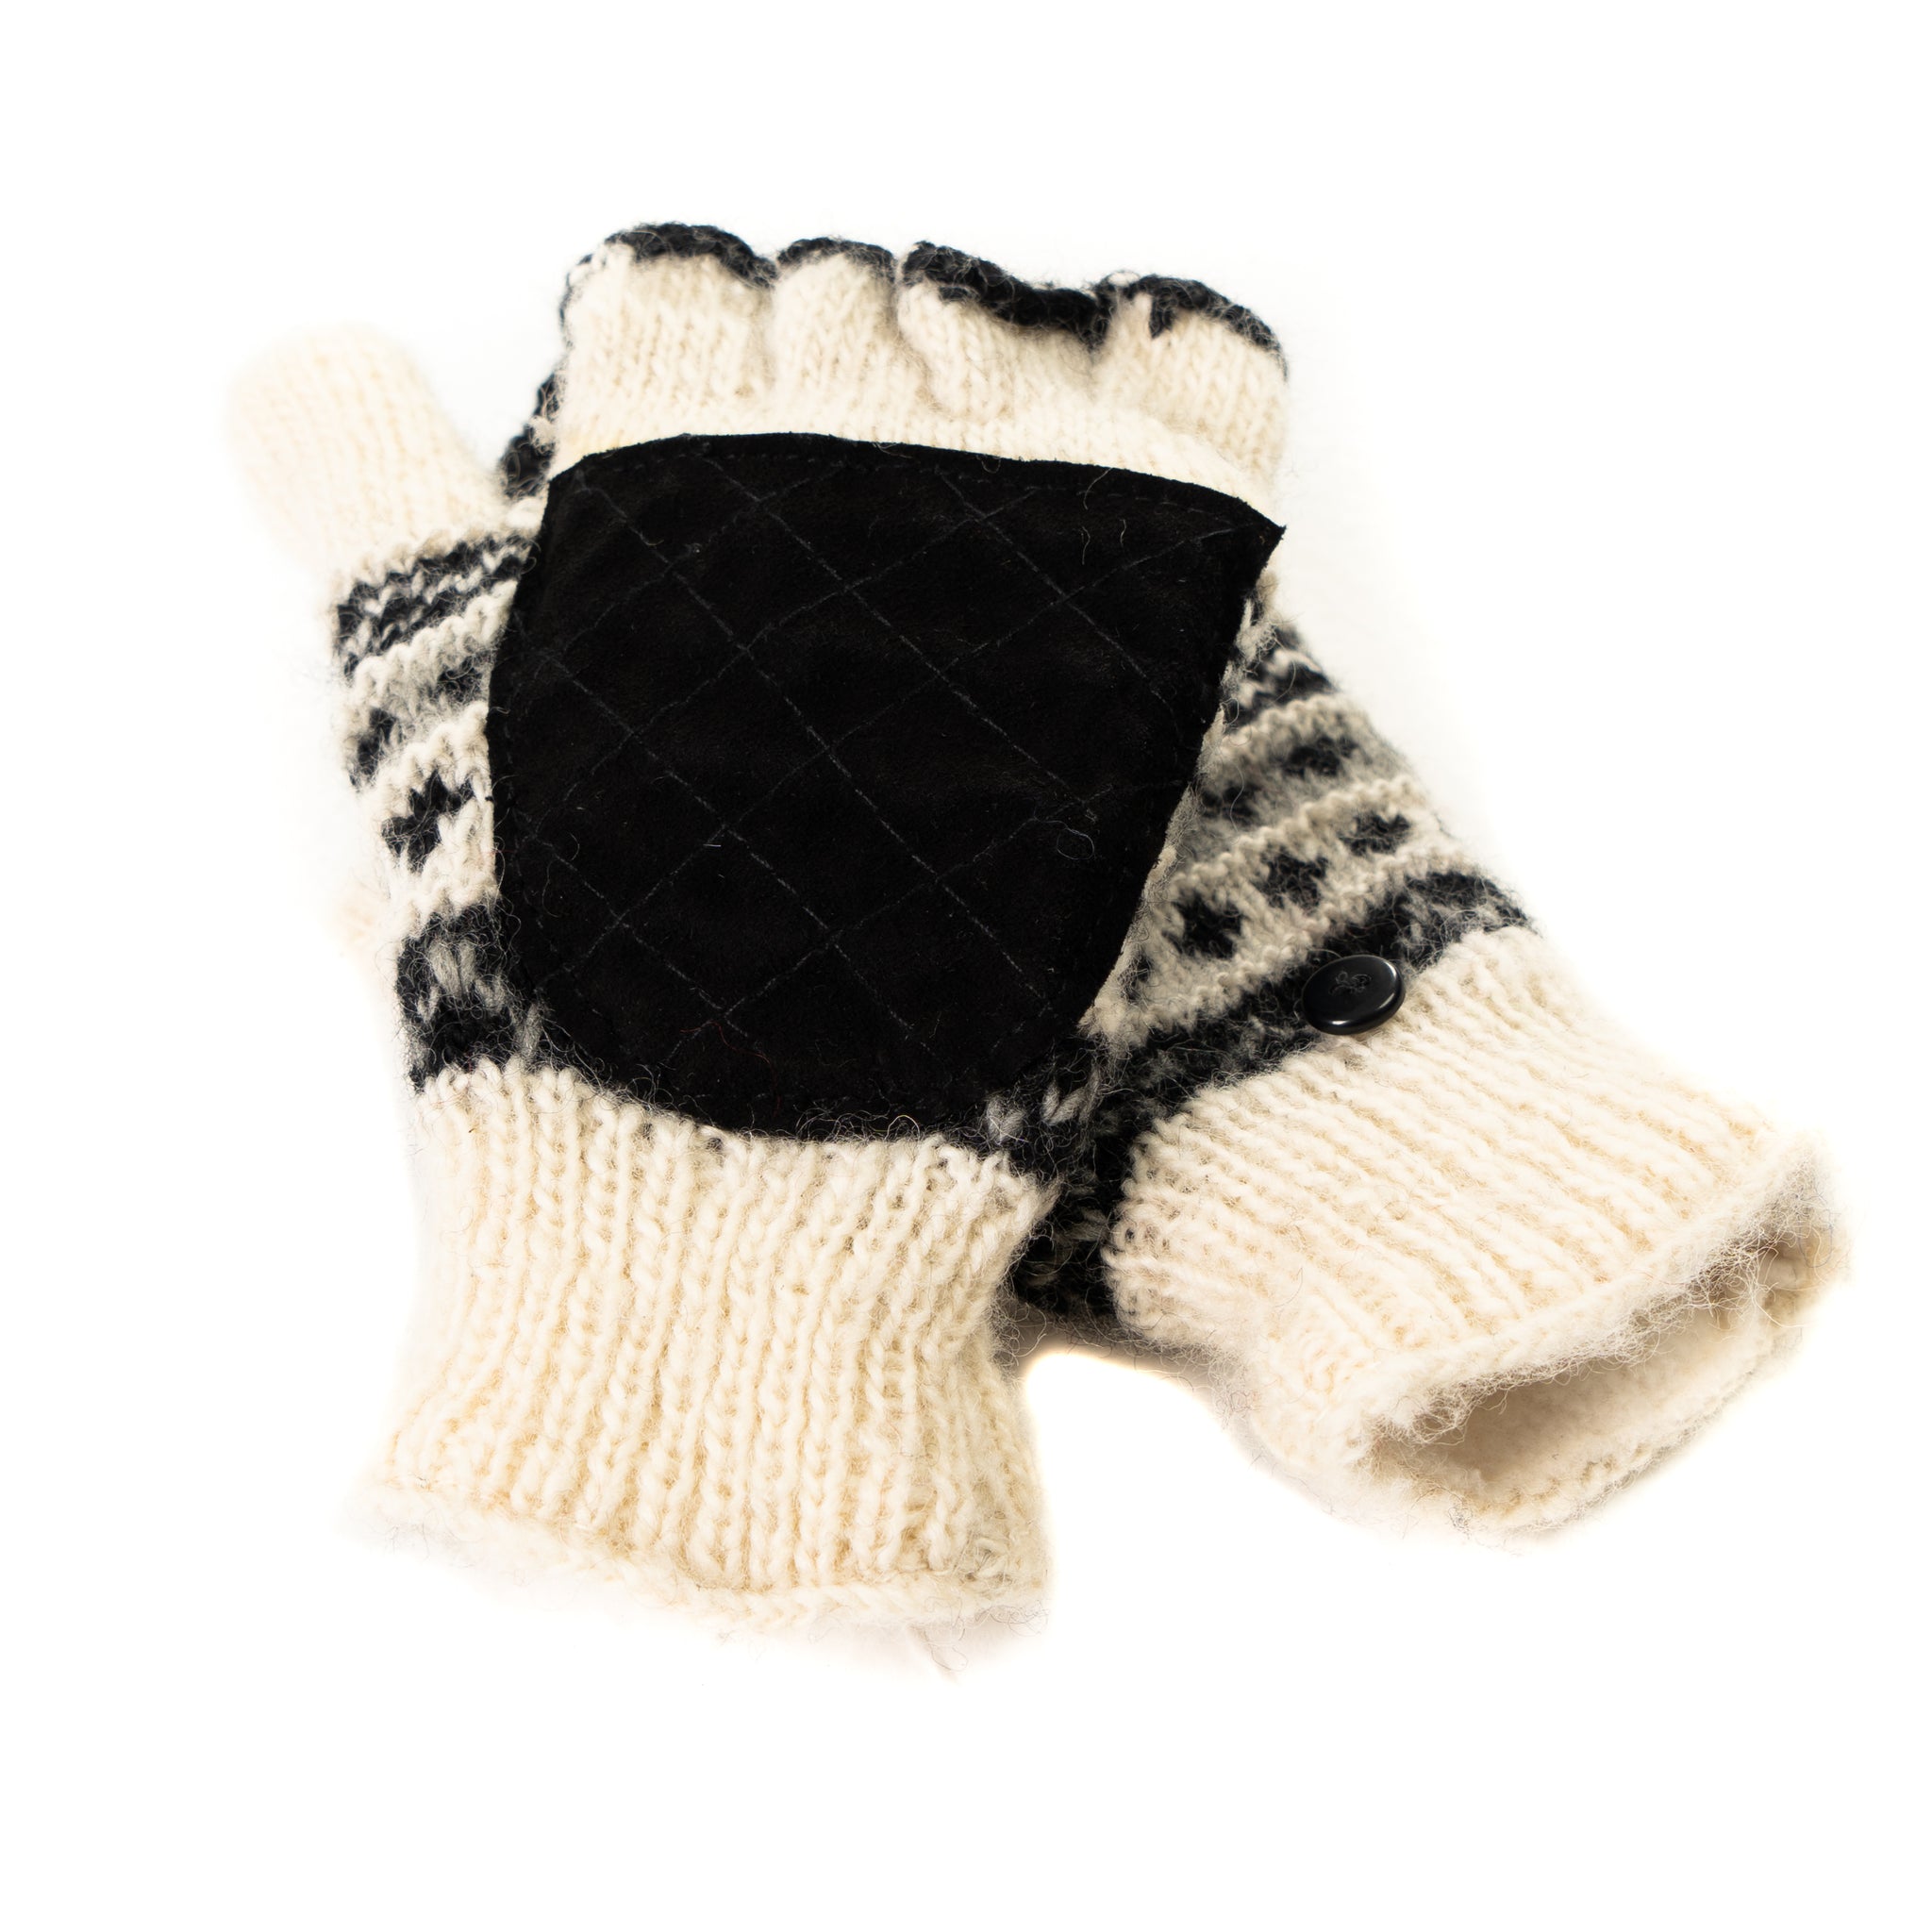 Hand Knit Wool Fleece Lined Convertible Fingerless Glove Mittens